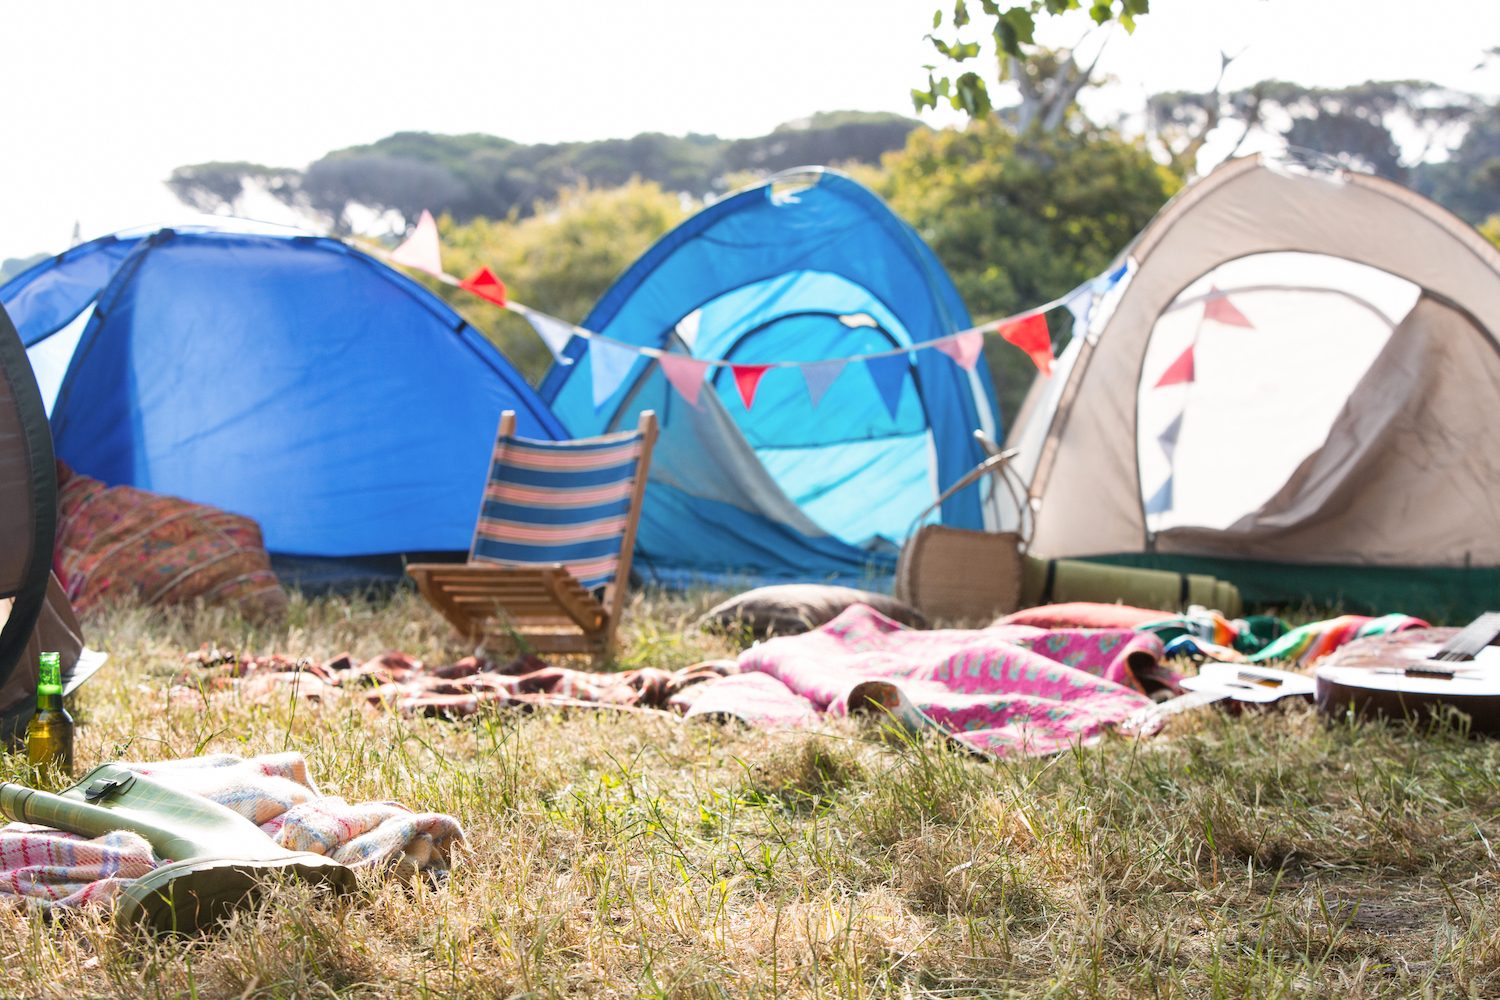 Пустой лагерь. Кемпинг зона пустая. Музыкальный фестиваль фото палатки. Ugly Camping blurry image. Camping music